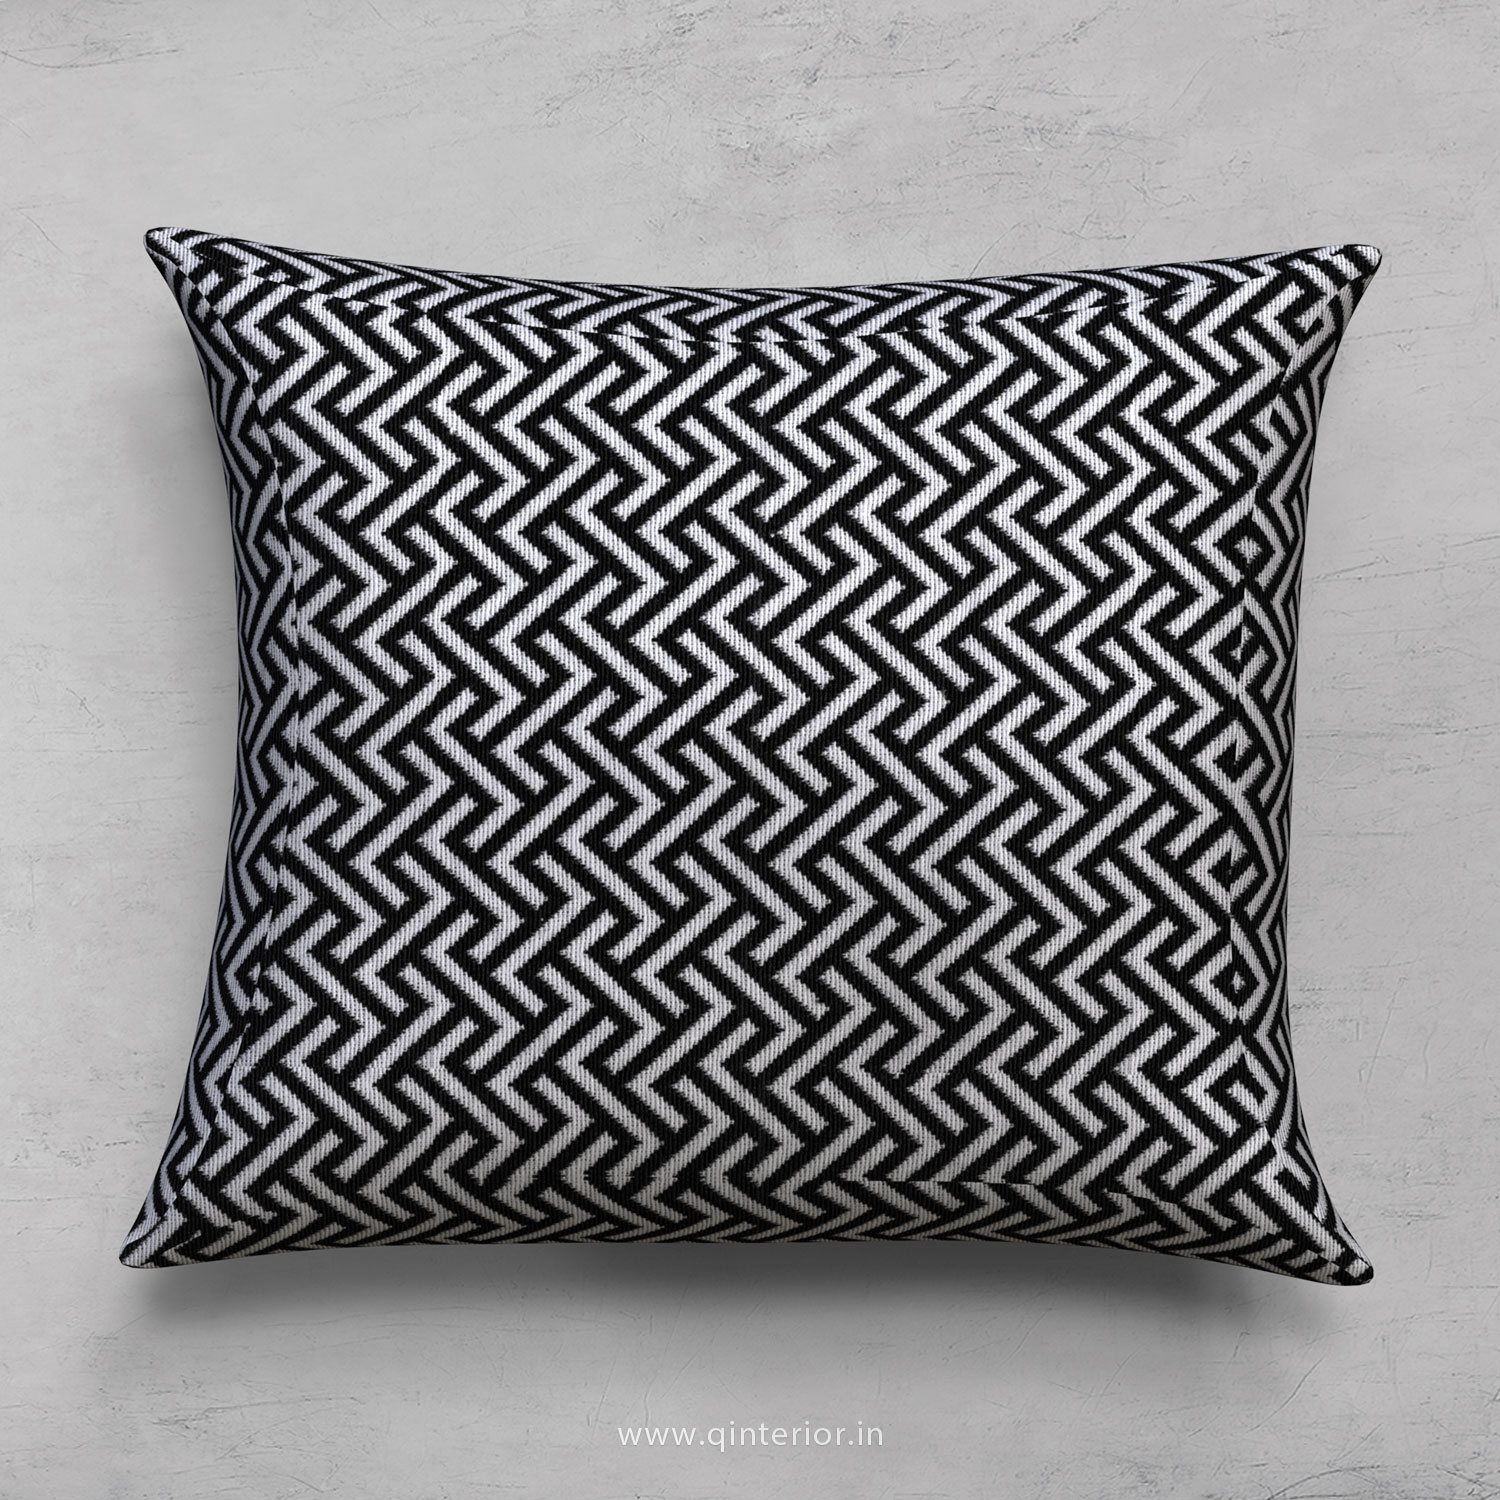 Cushion With Cushion Cover in Jacquard - CUS001 JQ15